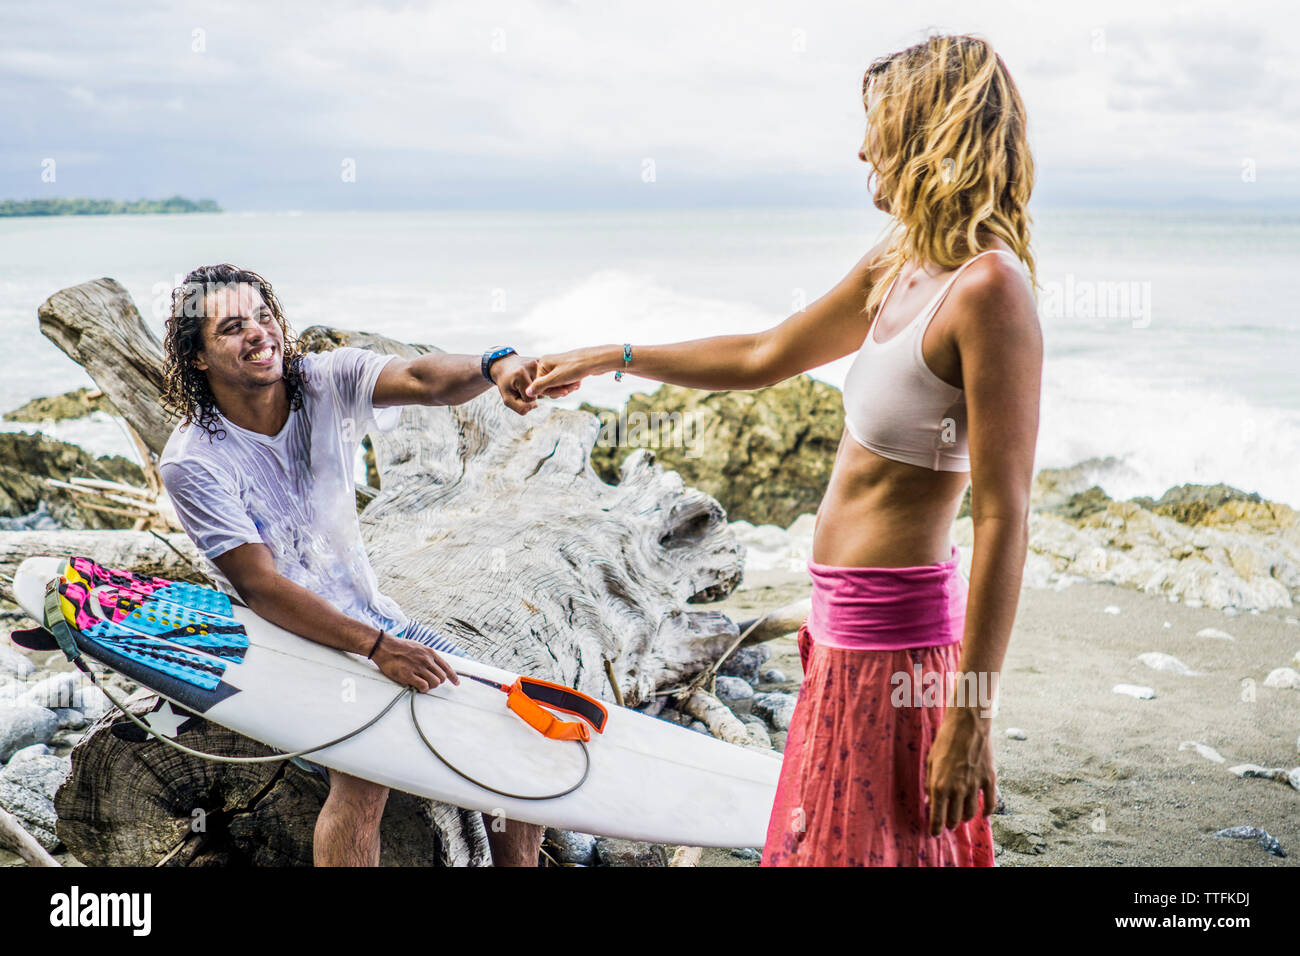 Heureux homme woman's hand holding surfer tout en restant assis sur driftwood at beach Banque D'Images